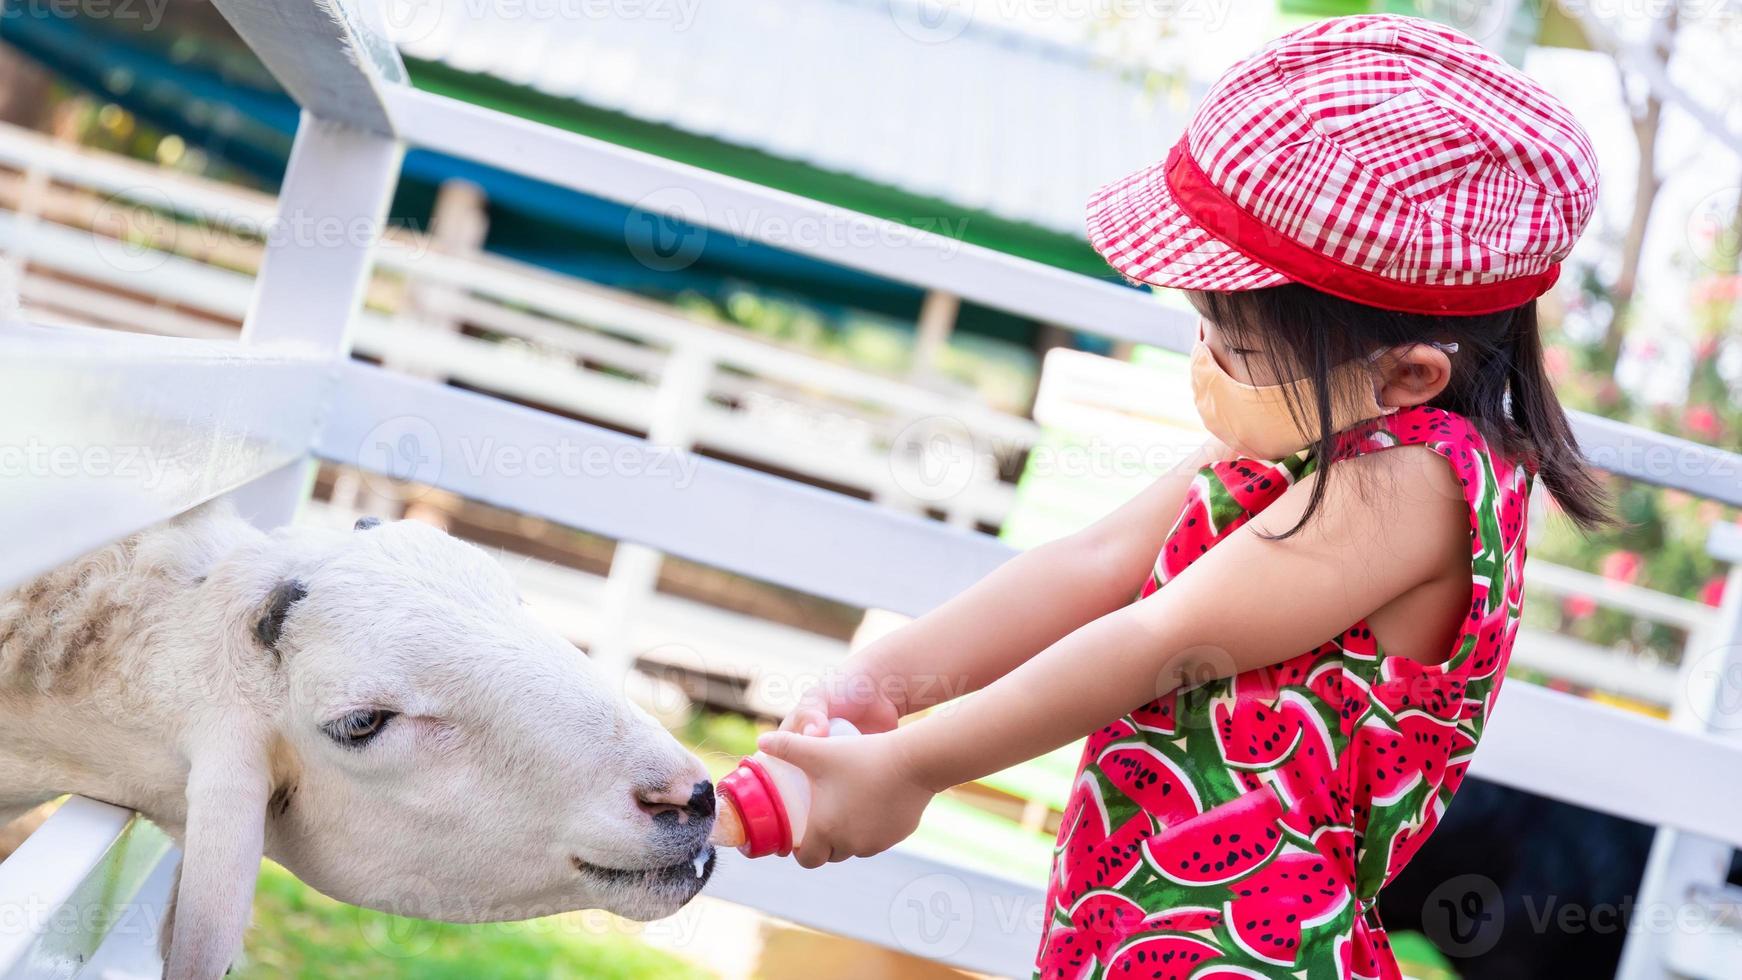 La niña usa una máscara de tela naranja para prevenir la propagación de la enfermedad del covid-19. el niño está recorriendo la granja de animales. niño feliz alimentando con leche a la cabra blanca. un niño de 4 años lleva un sombrero rojo que lo protege del sol. foto